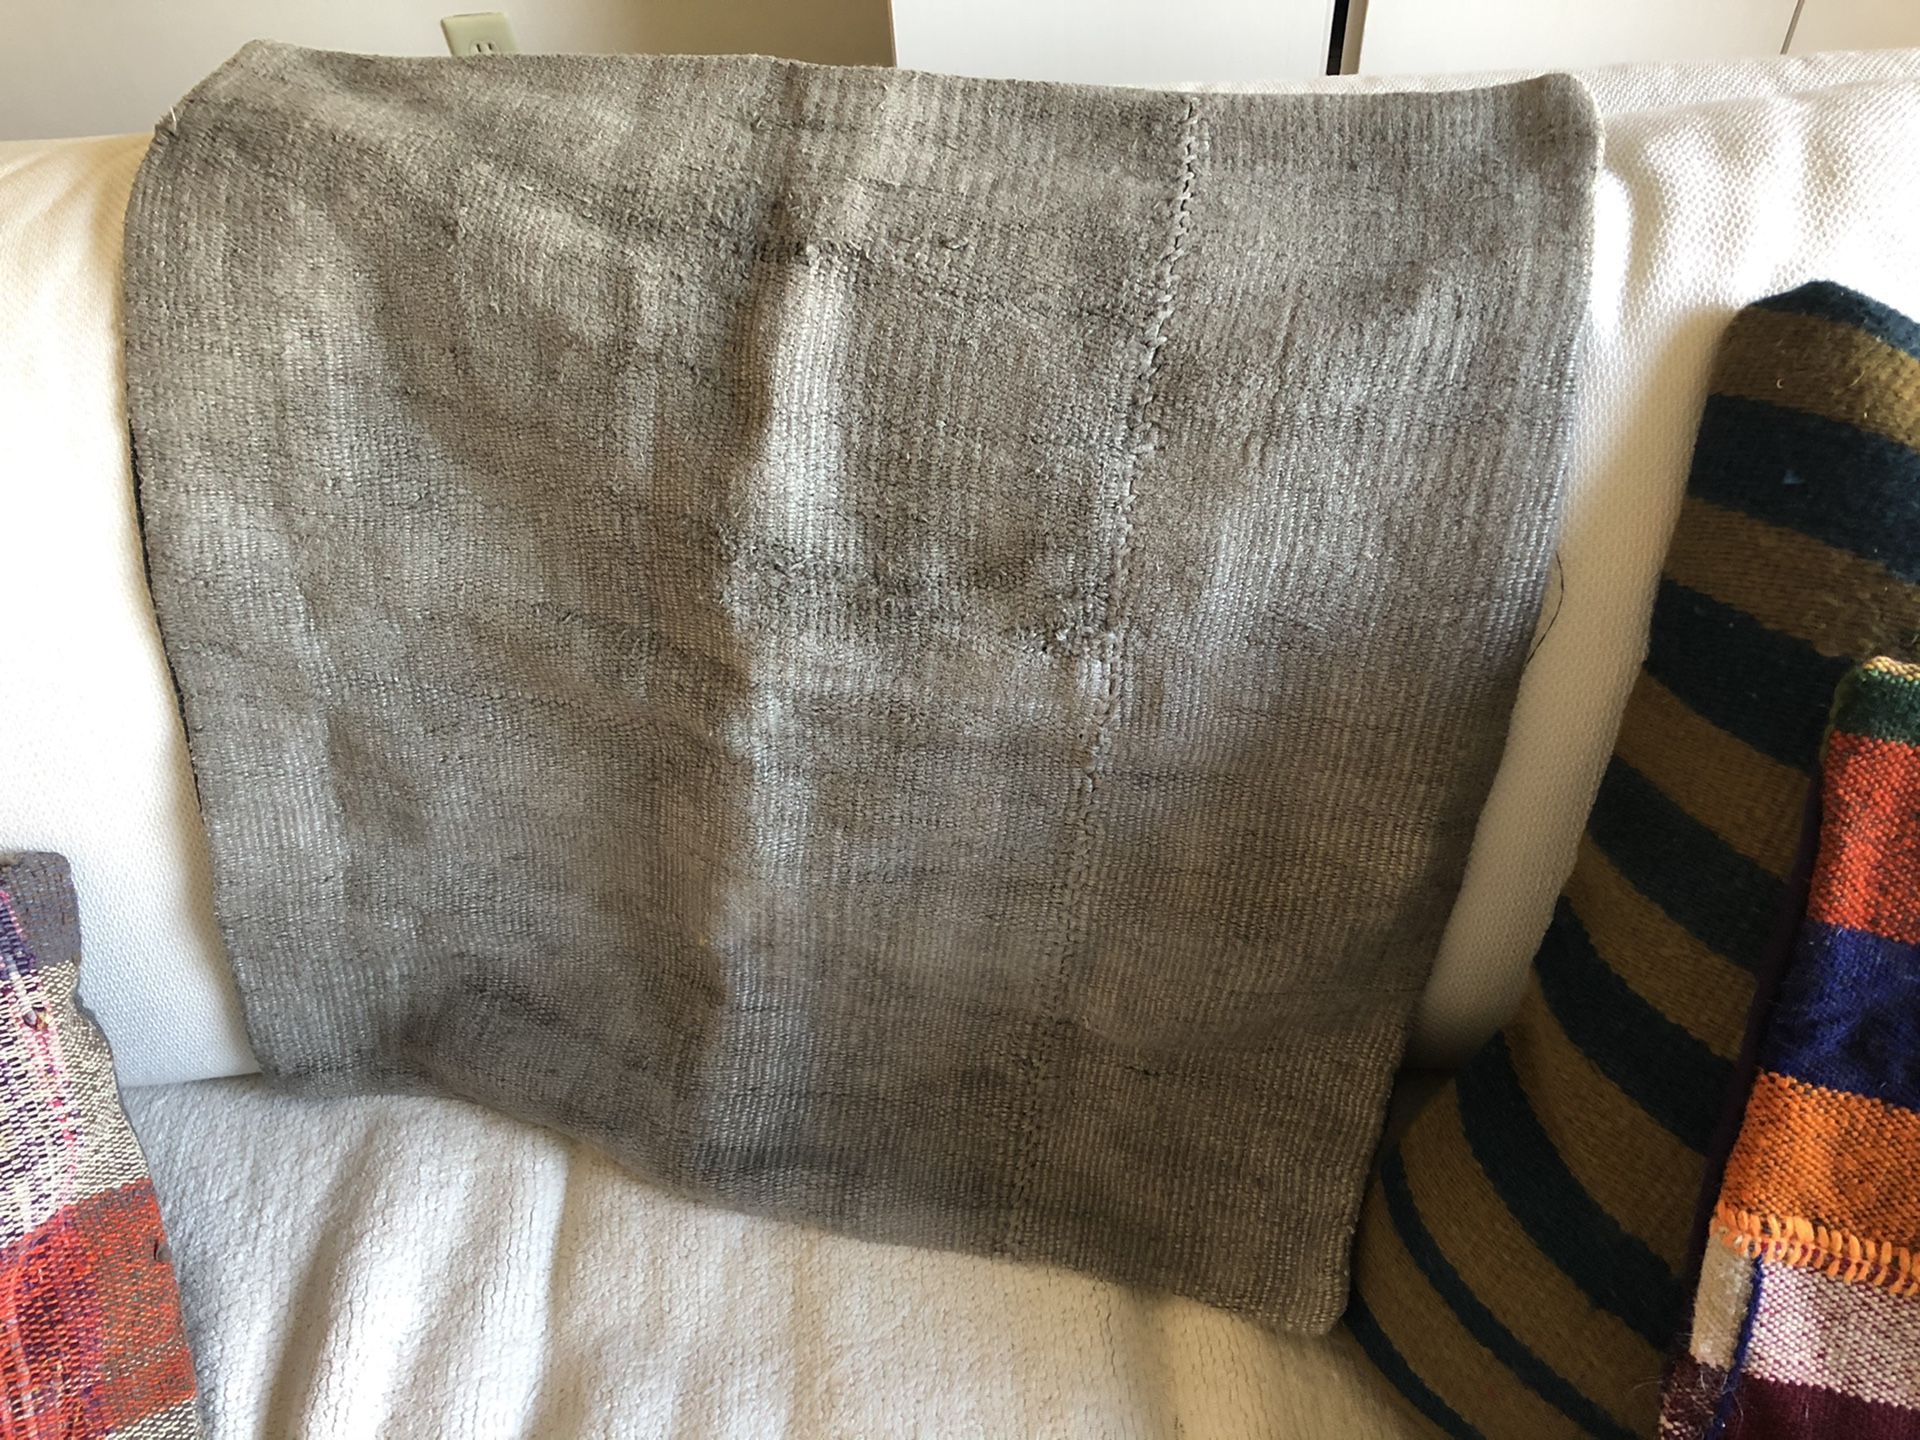 24 x 24 hemp pillow case. Light grey